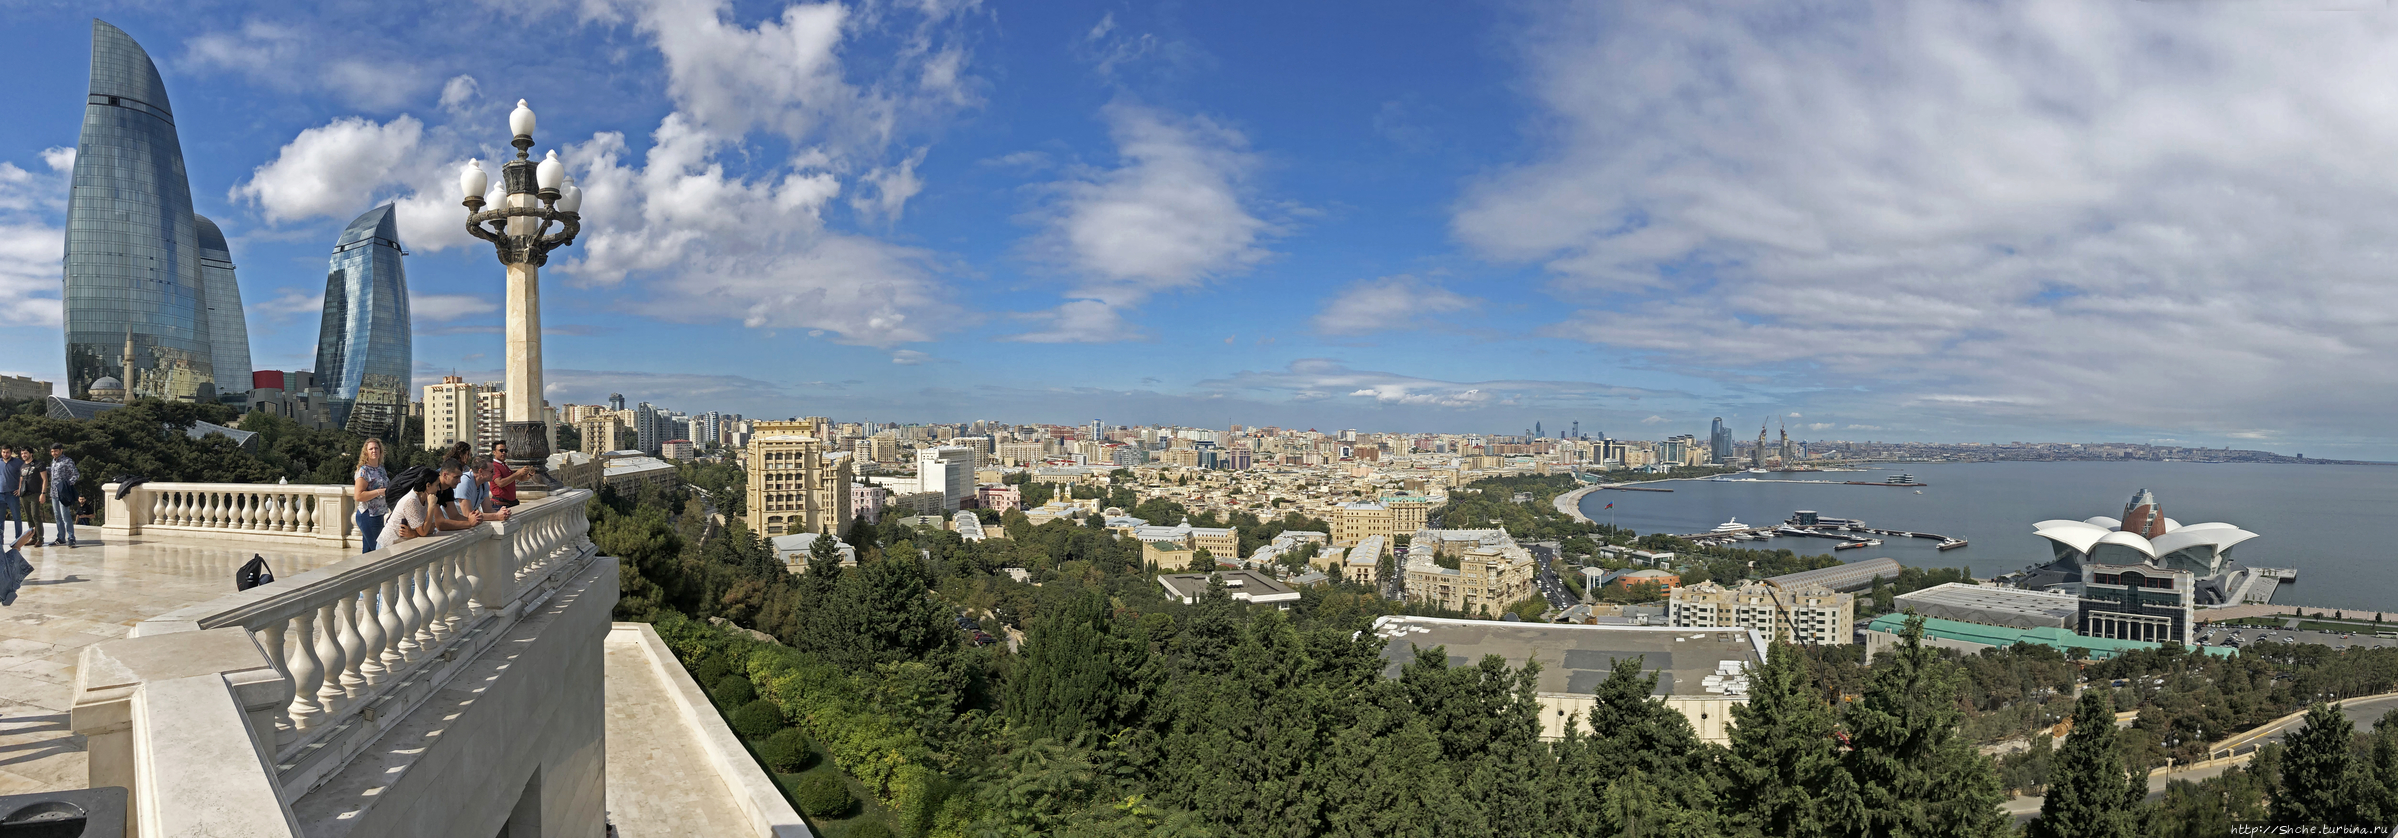 Панорама Баку / Baku Panoramic View